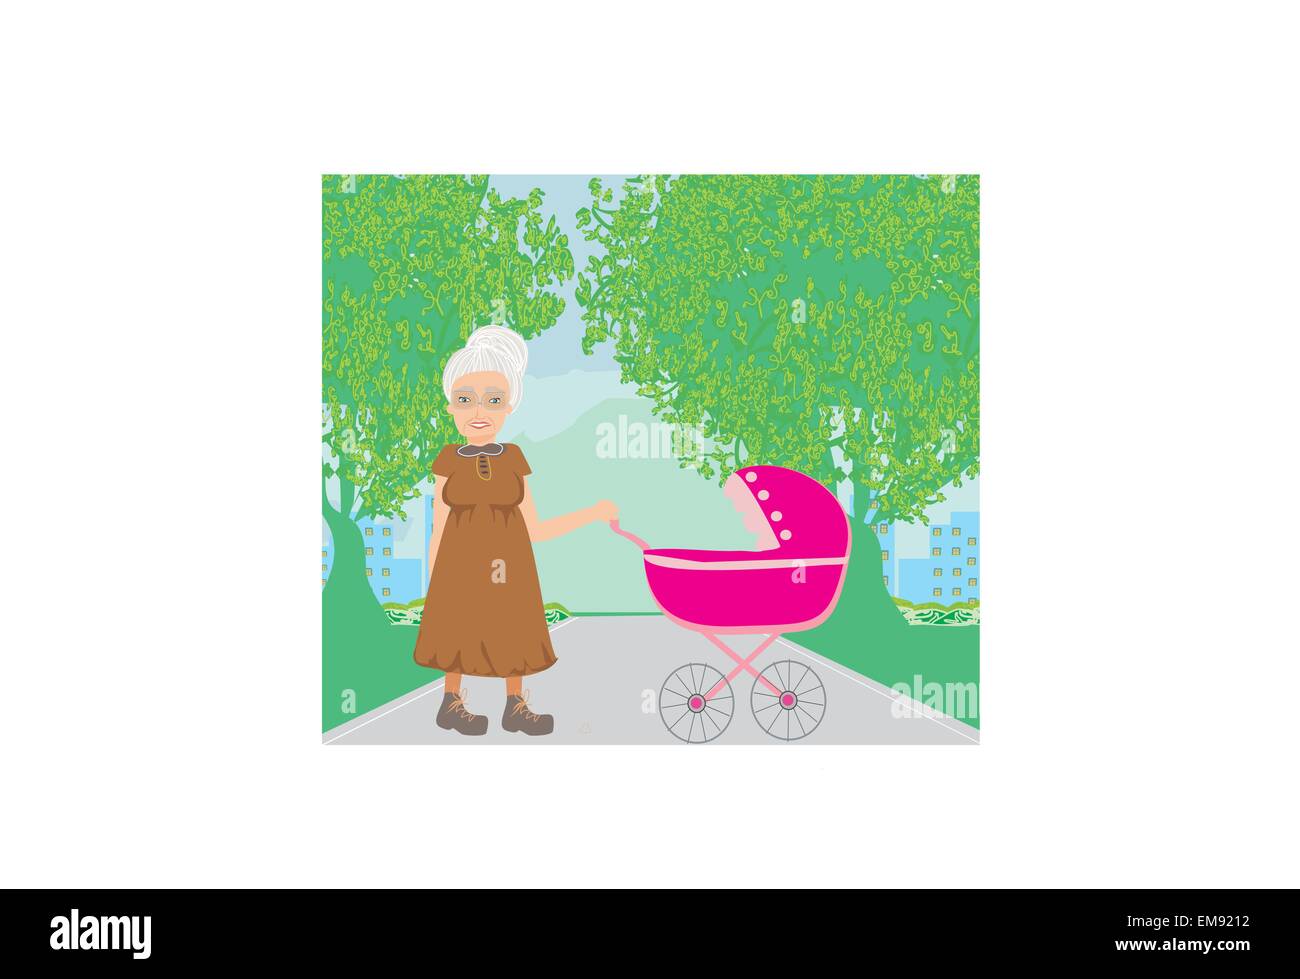 Vieille dame poussant une poussette dans le parc Illustration de Vecteur